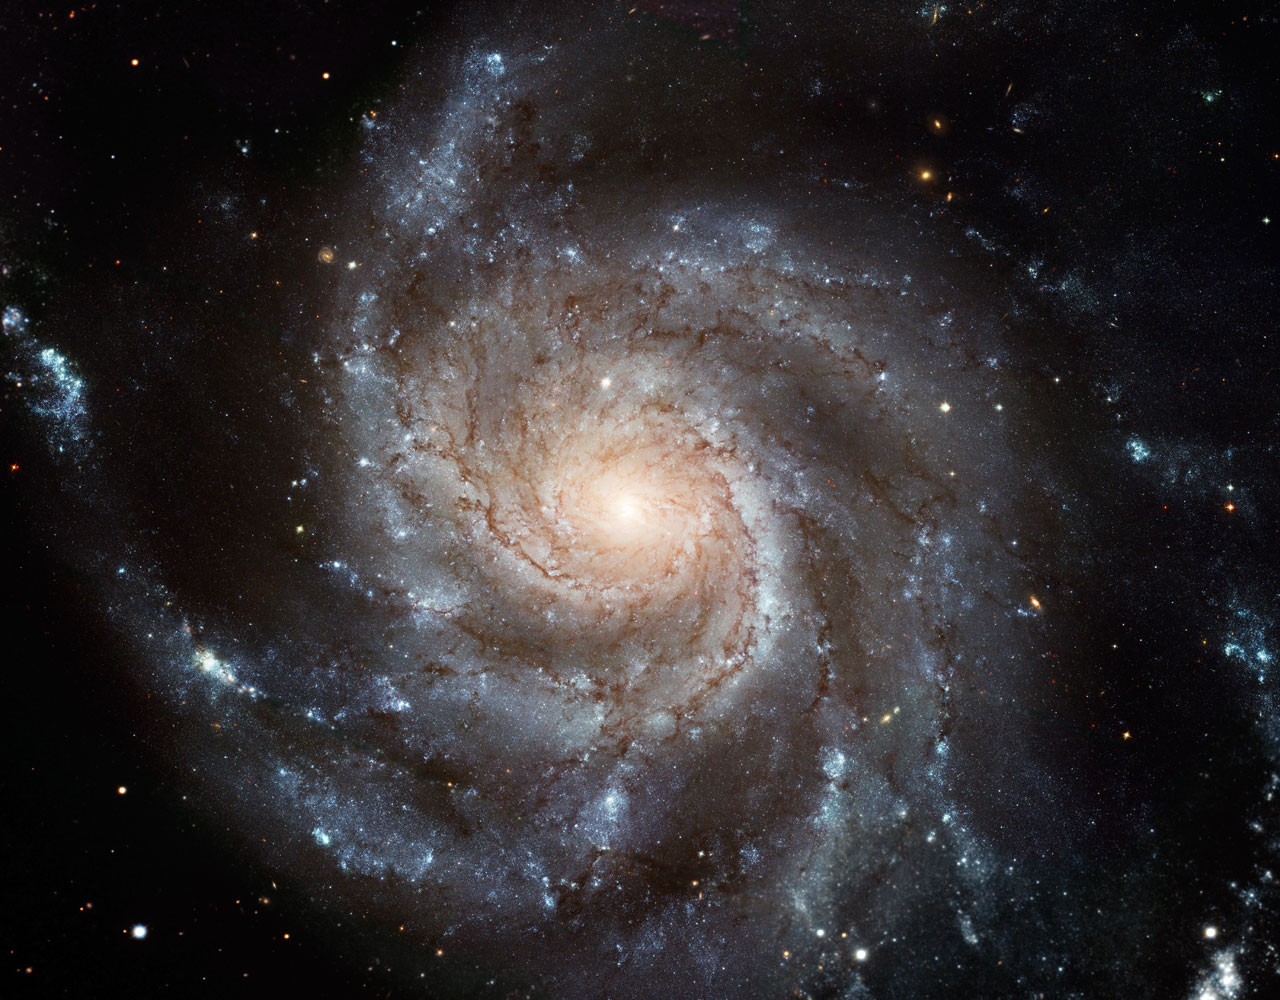 Vor einem dunklen Hintergrund leuchtet eine ausgefranste Spiralgalaxie, die wir von oben sehen.